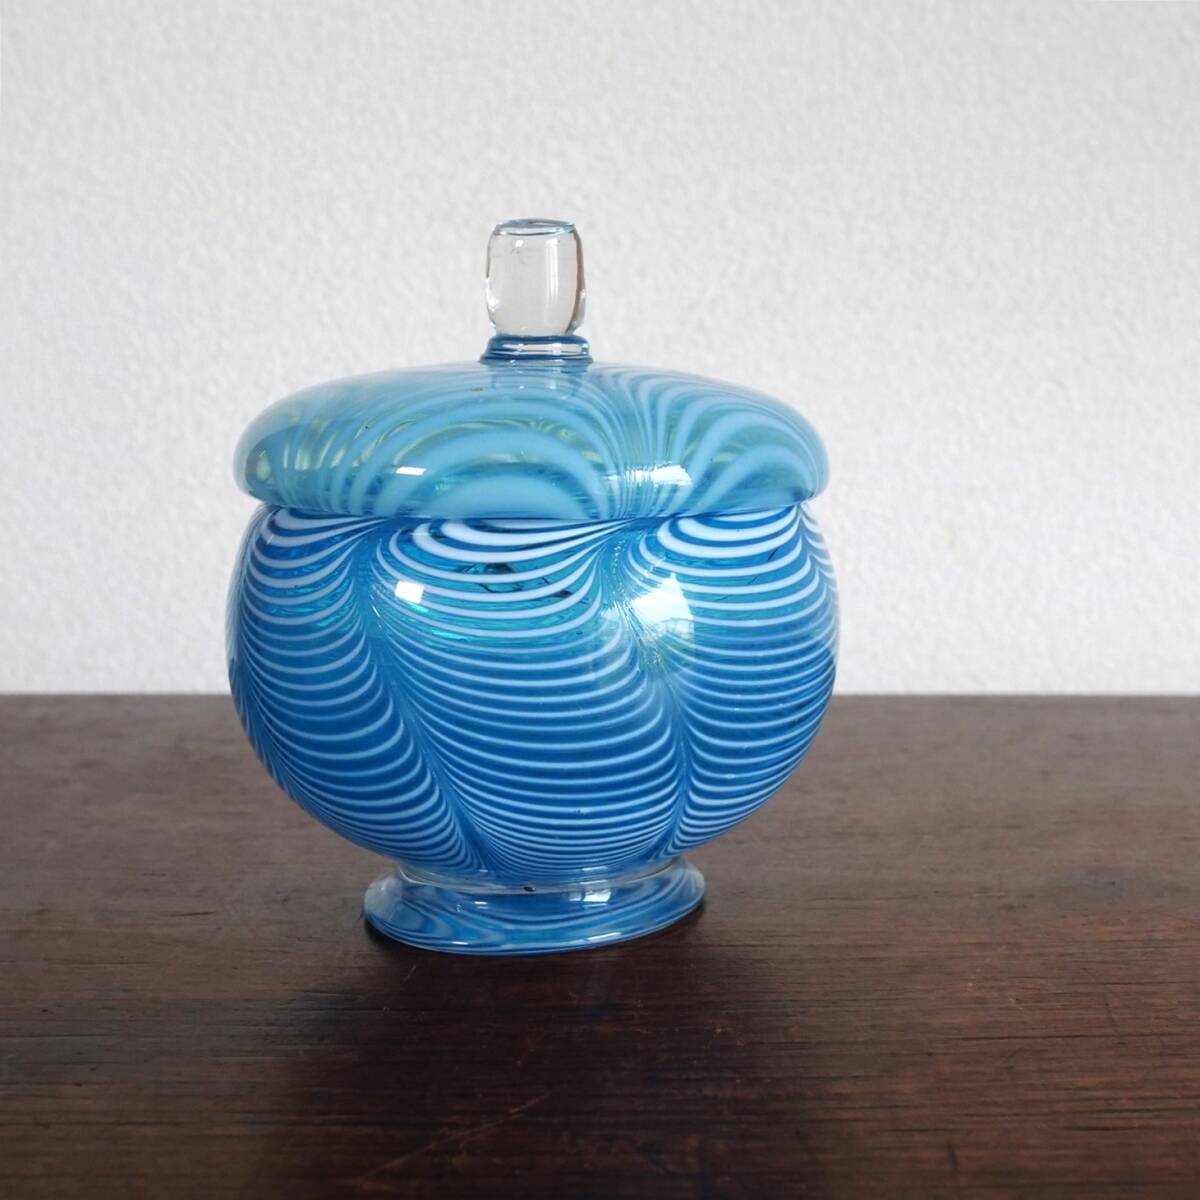 * collector освобождение синий цвет ..... большой крышка предмет карамельки компэйто inserting ... бутылка самый хорошо сделанный товар крышка имеется контейнер Meiji Taisho времена. современный . стекло / лед стакан 